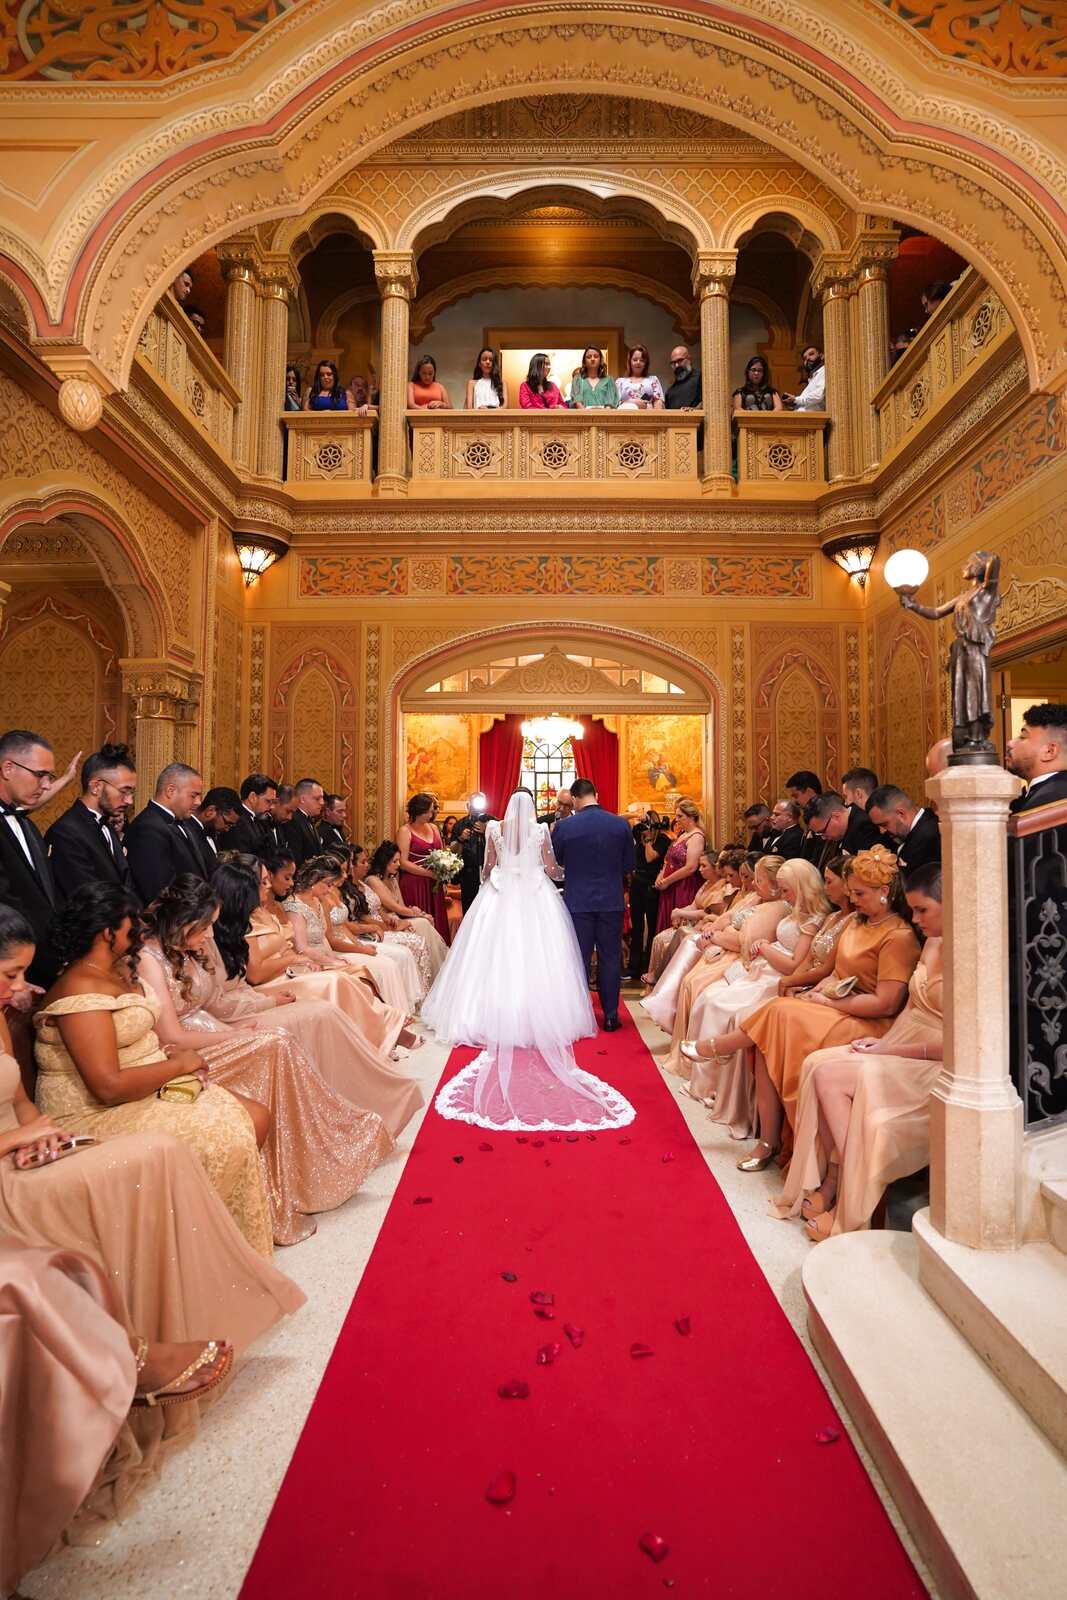 cerimonia de casamento no salão antigo